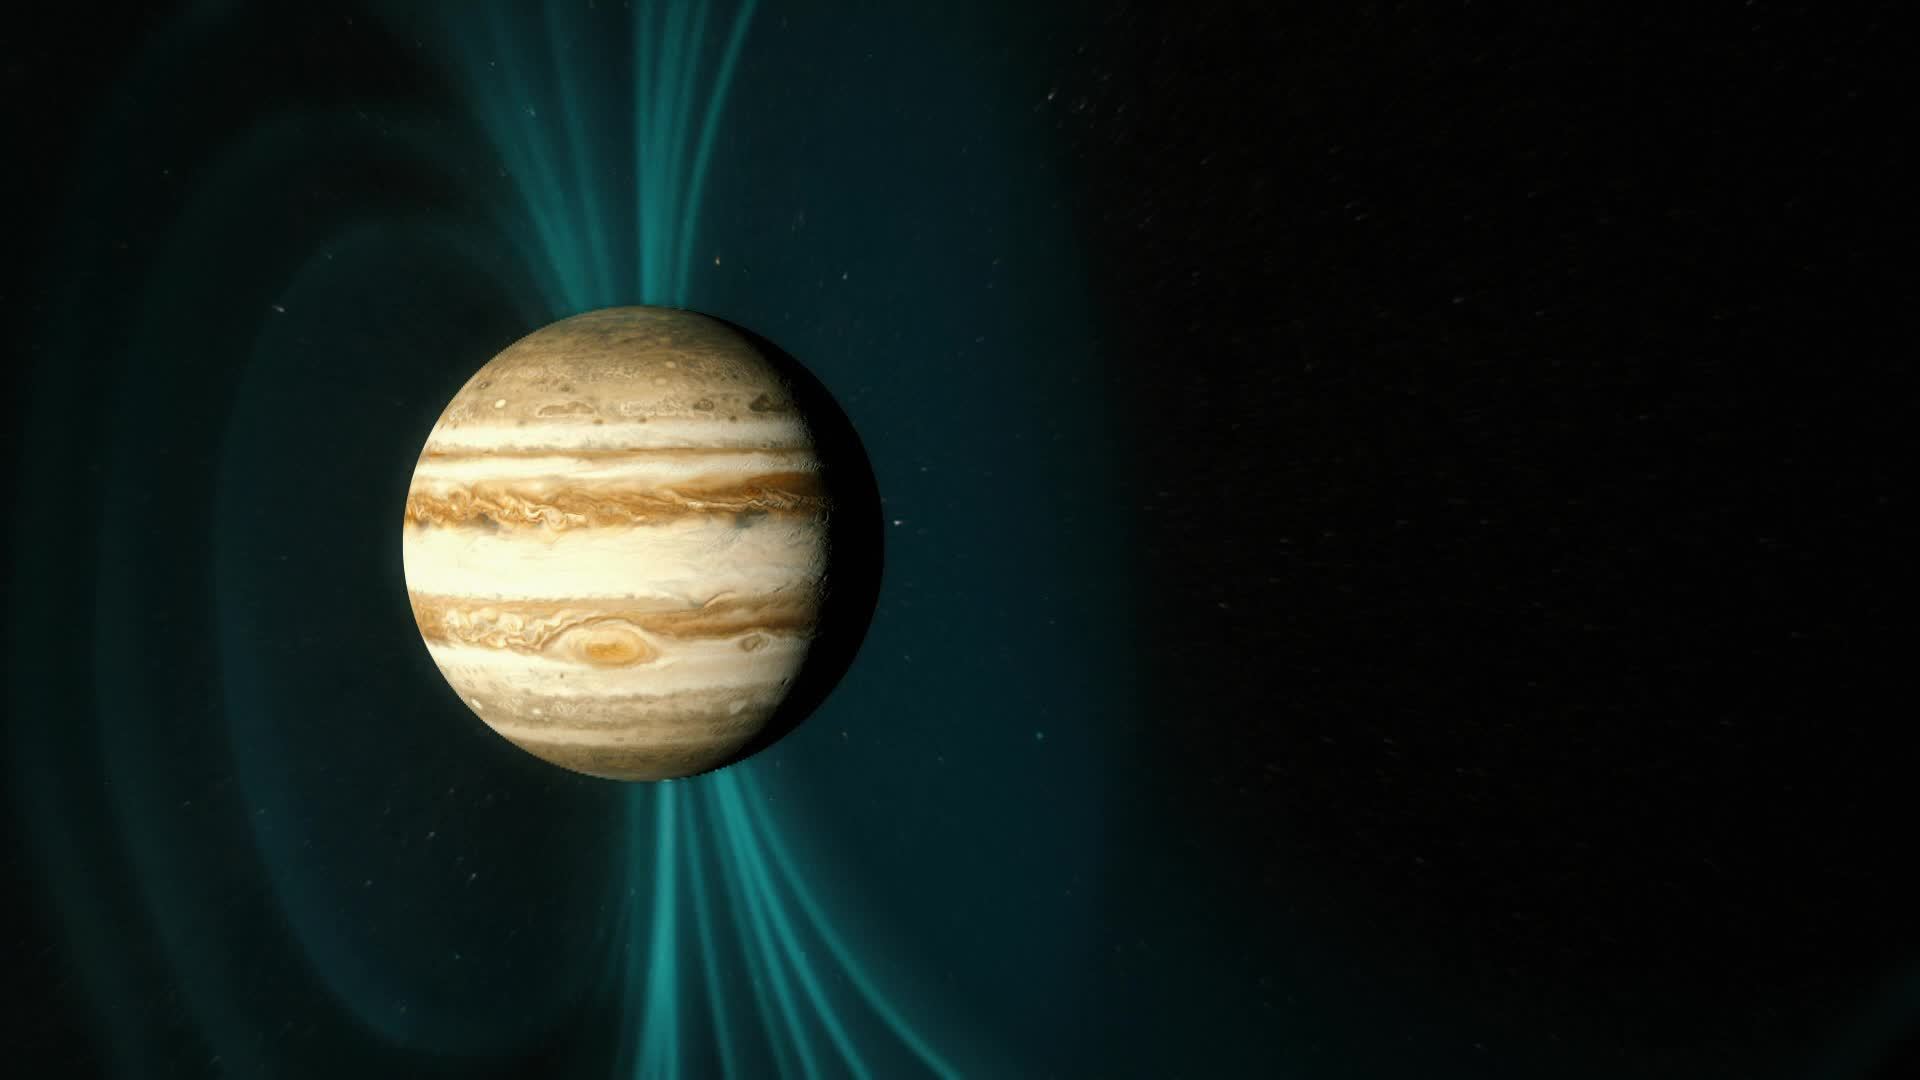 4. Júpiter: El gemelo secreto del sol